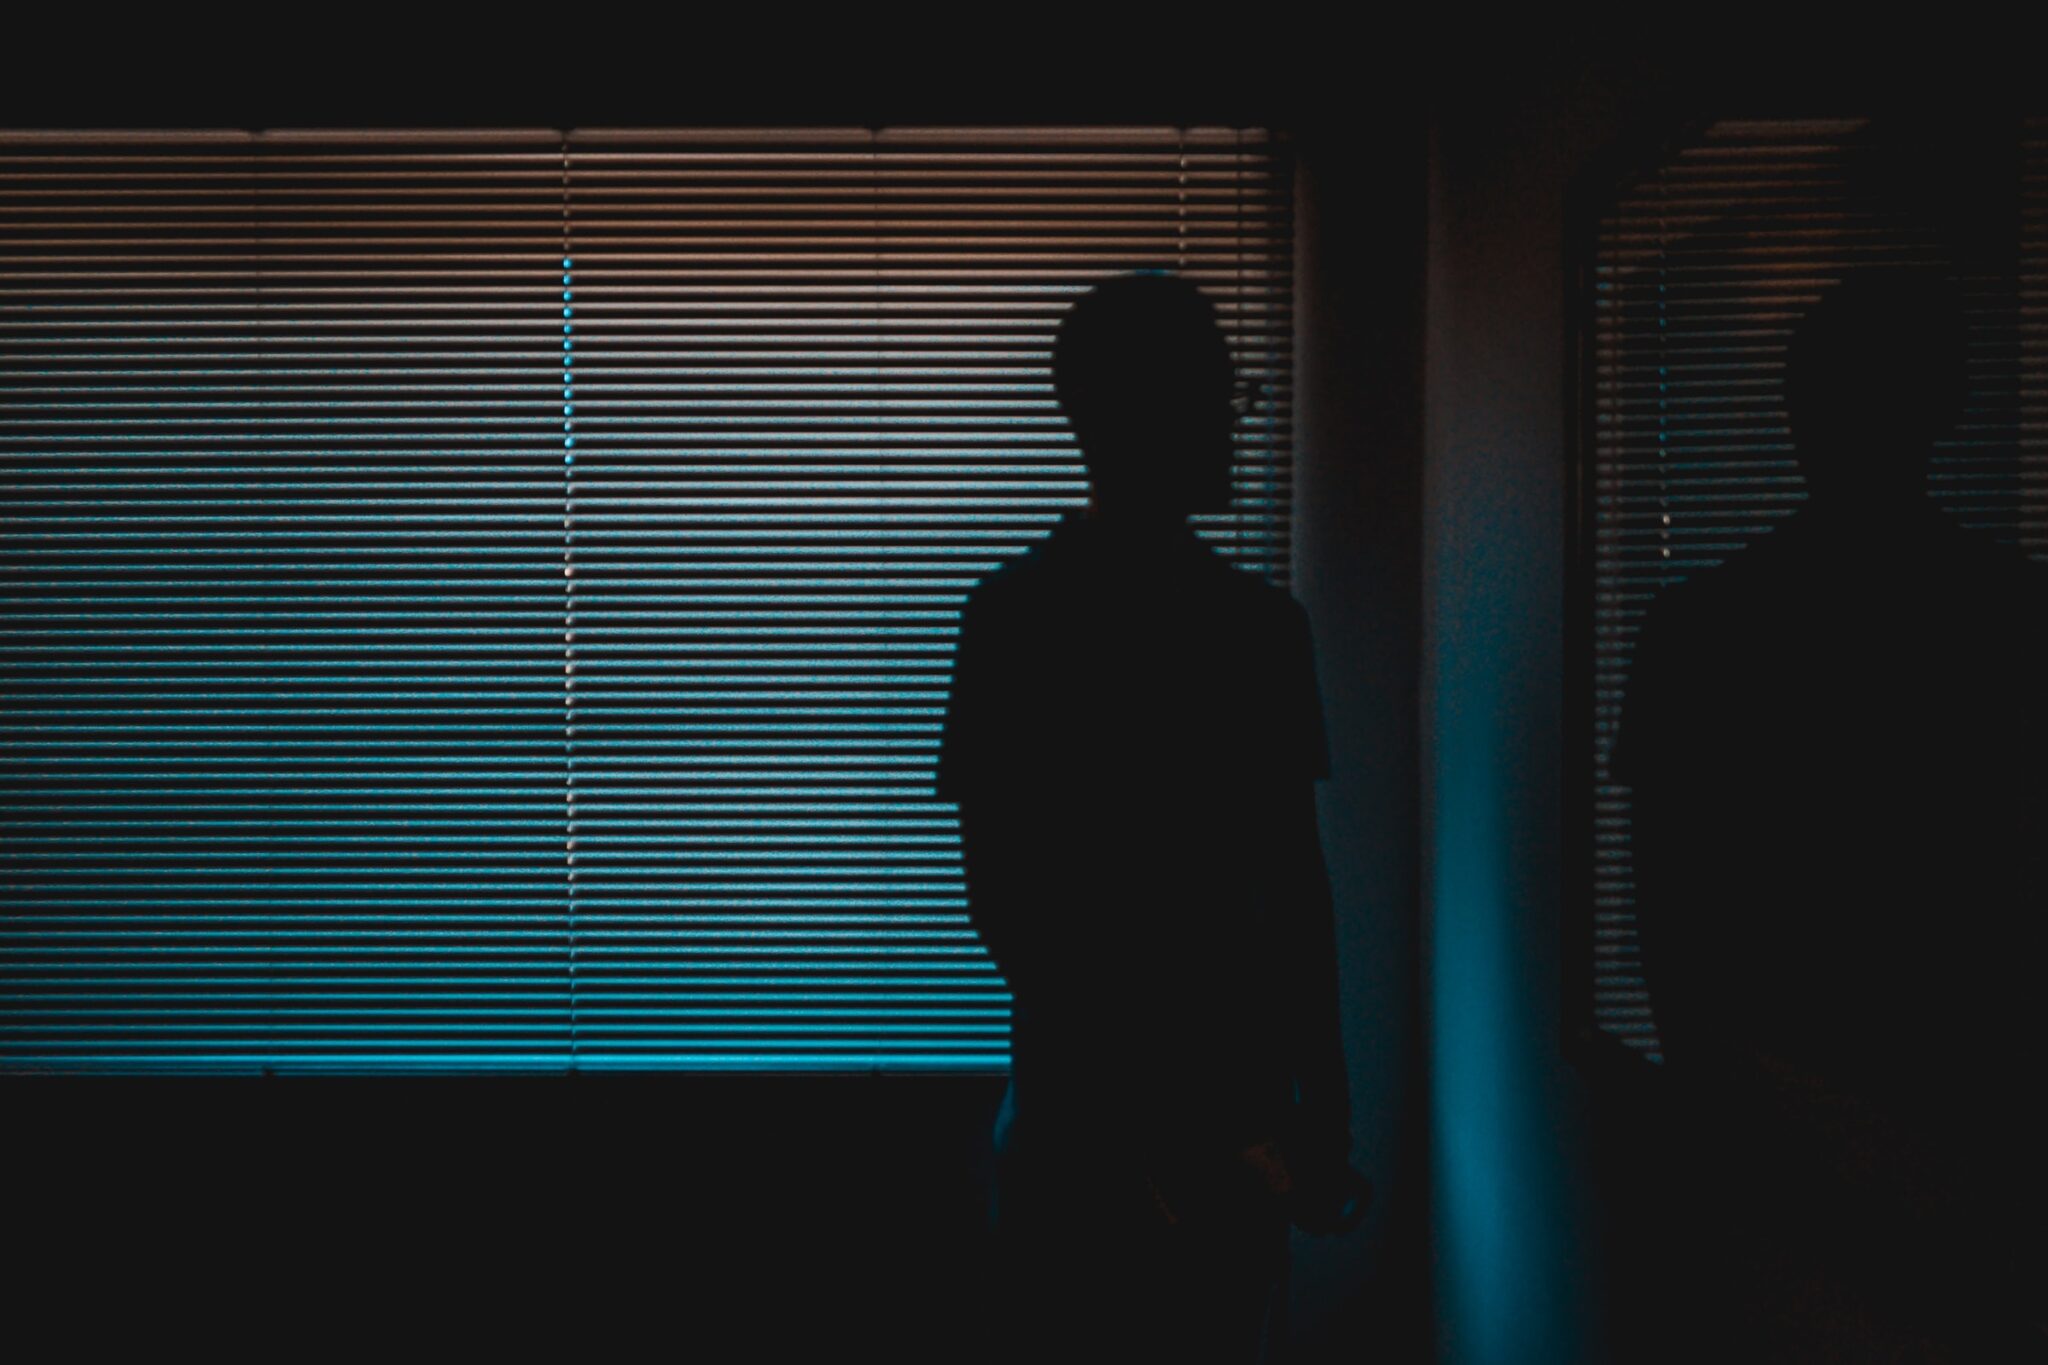 Ein Mann steht in einem abgedunkelten Raum vor heruntergelassenen Jalousien, durch die ein wenig Licht in blau und orange fällt. Man sieht nur seinen Schattenriss.